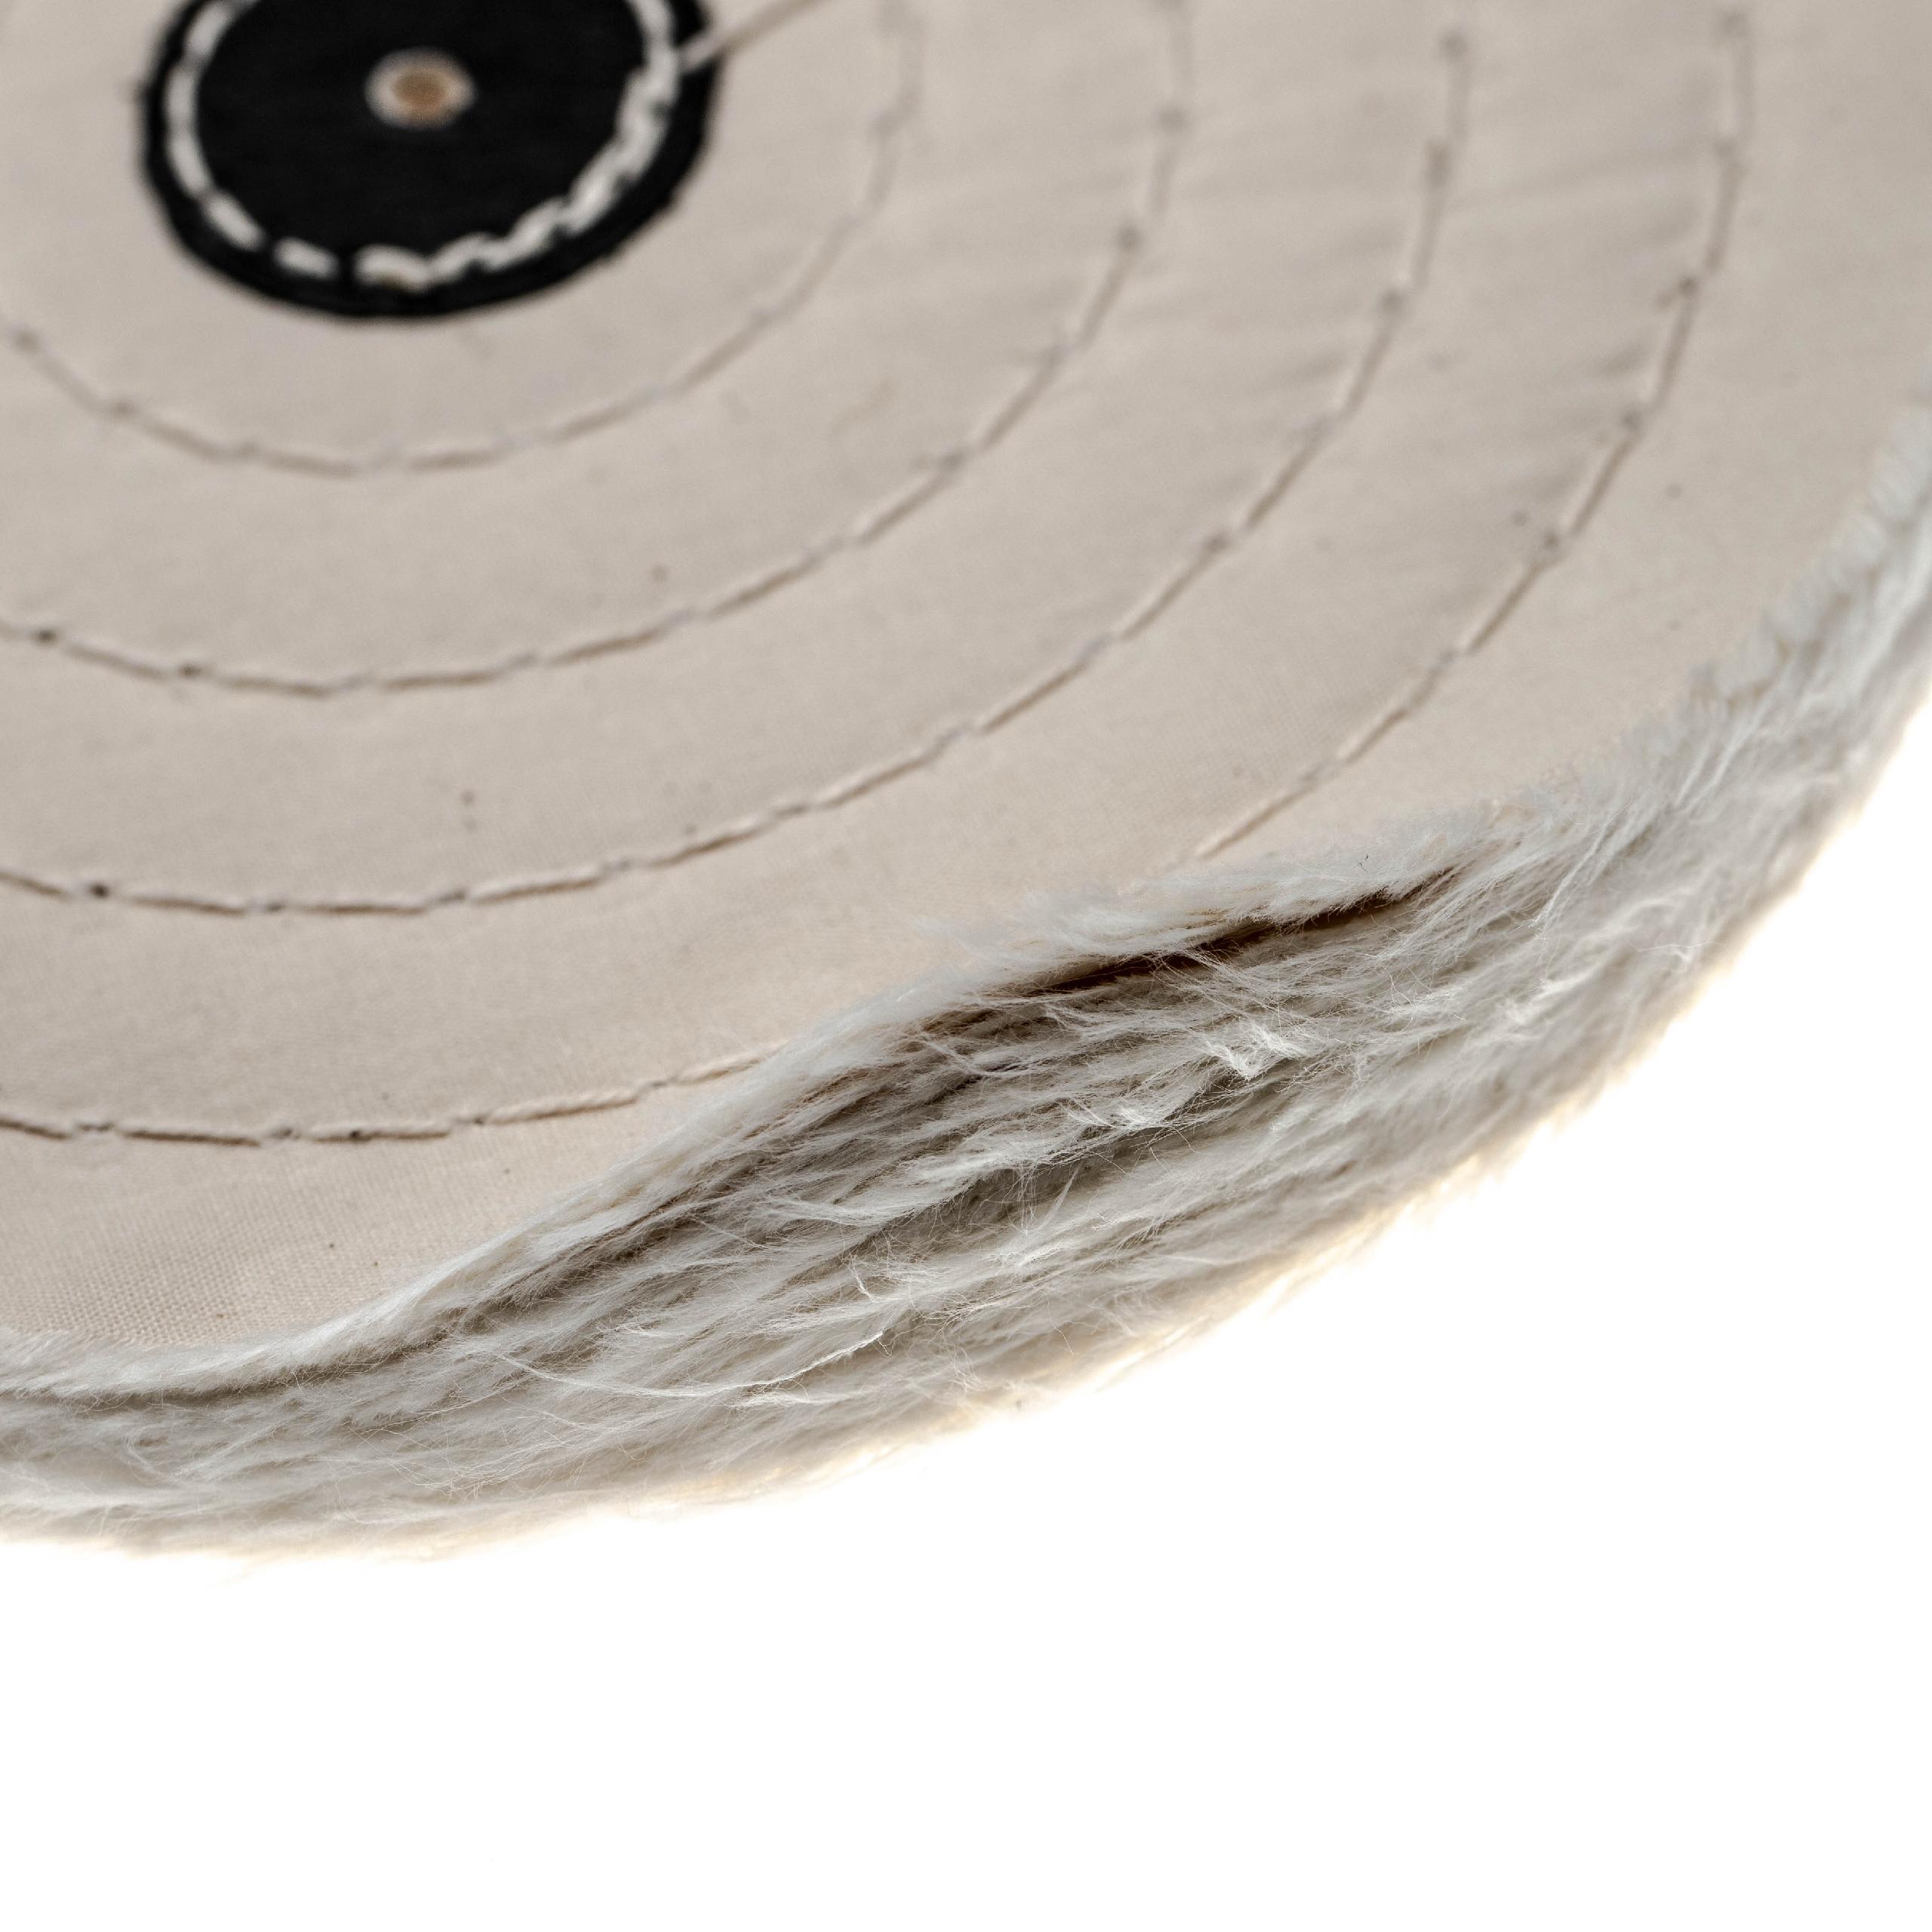 Bonnet de polissage pour modèle courant de meuleuse, perceuse de 17,7cm de diamètre - couleur crème